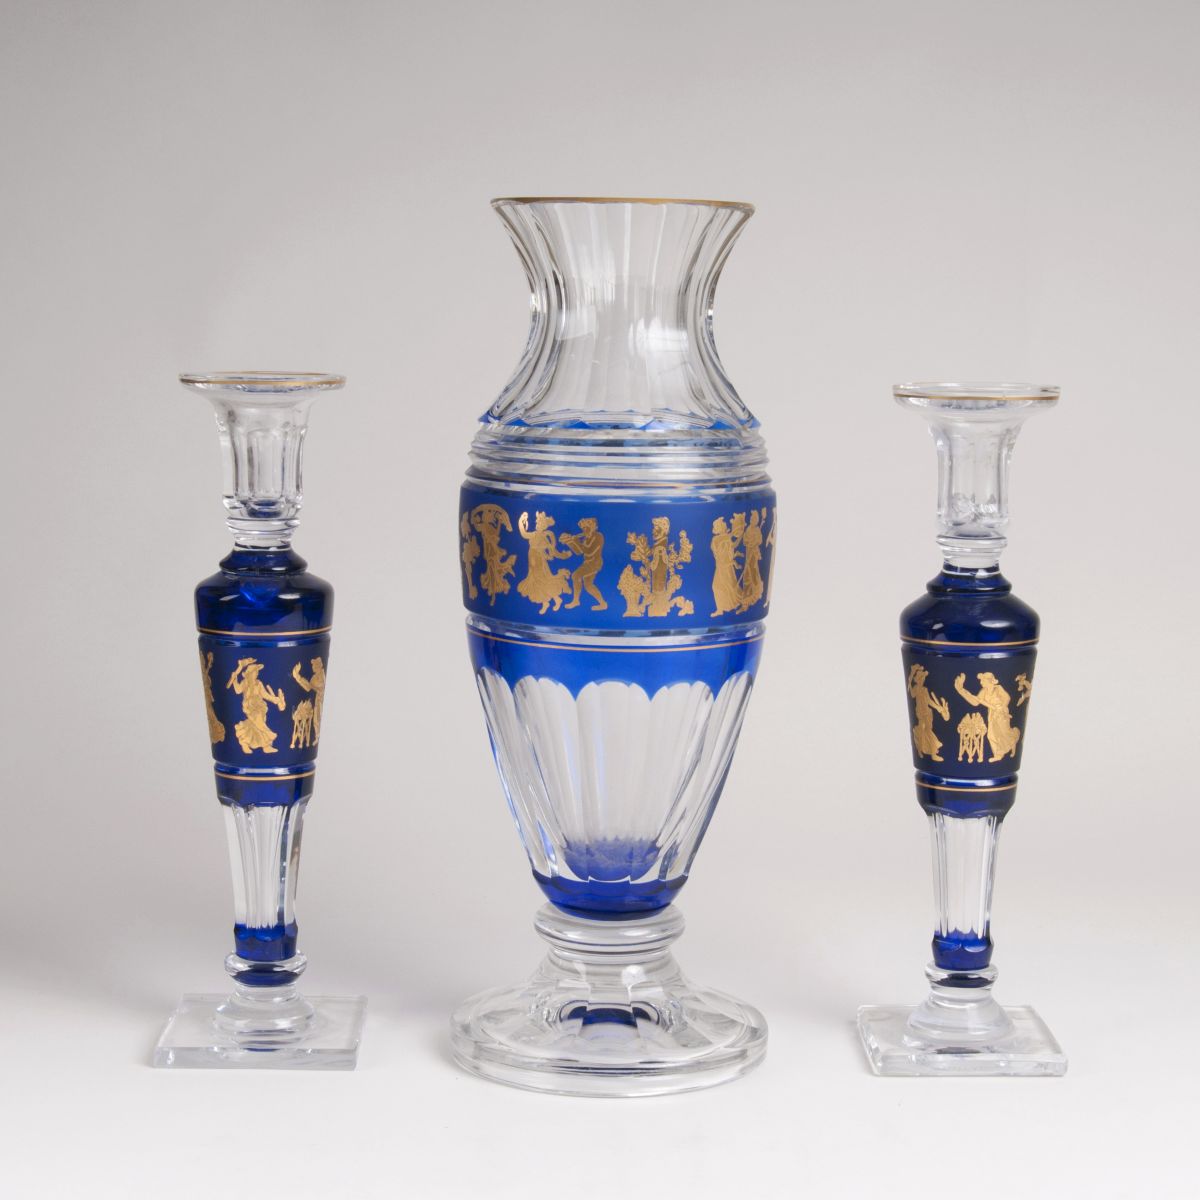 Vase 'Périclès' und Leuchterpaar aus der Serie 'Danse de flore'